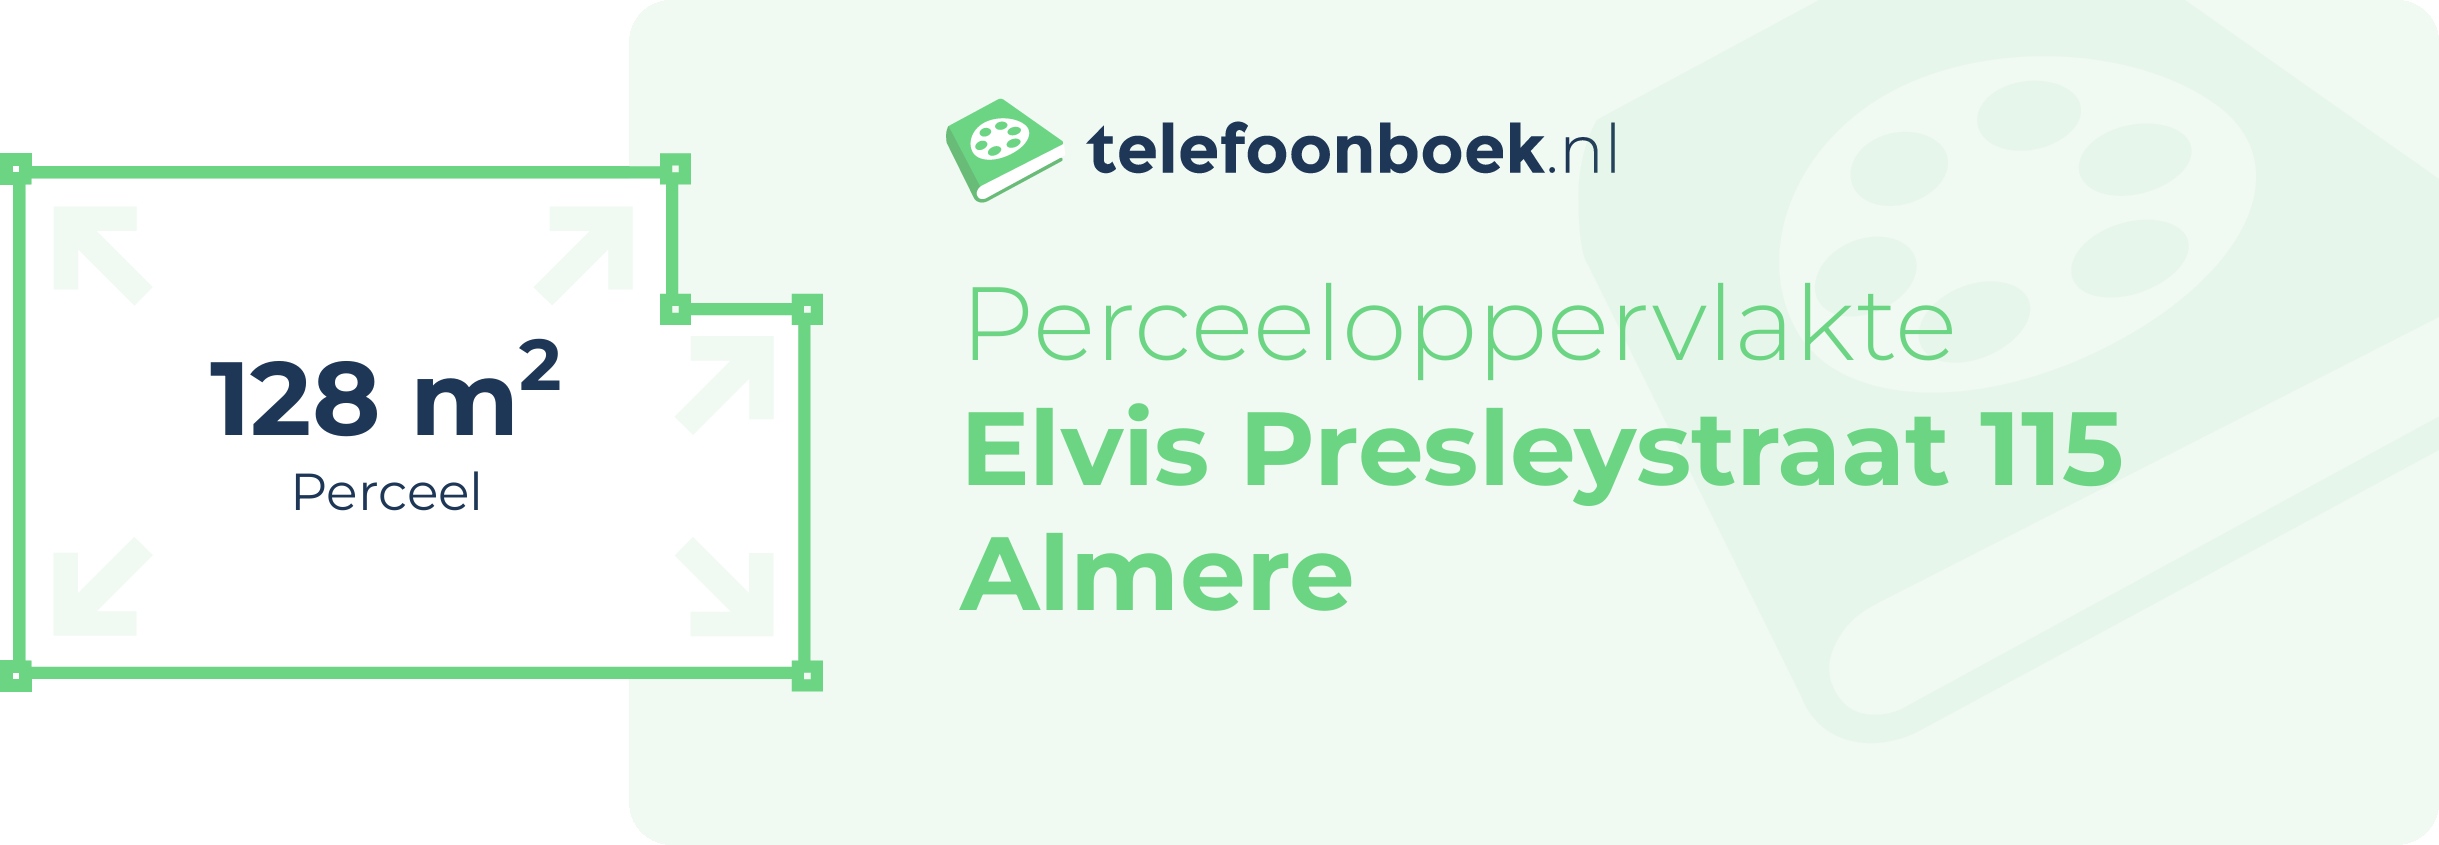 Perceeloppervlakte Elvis Presleystraat 115 Almere